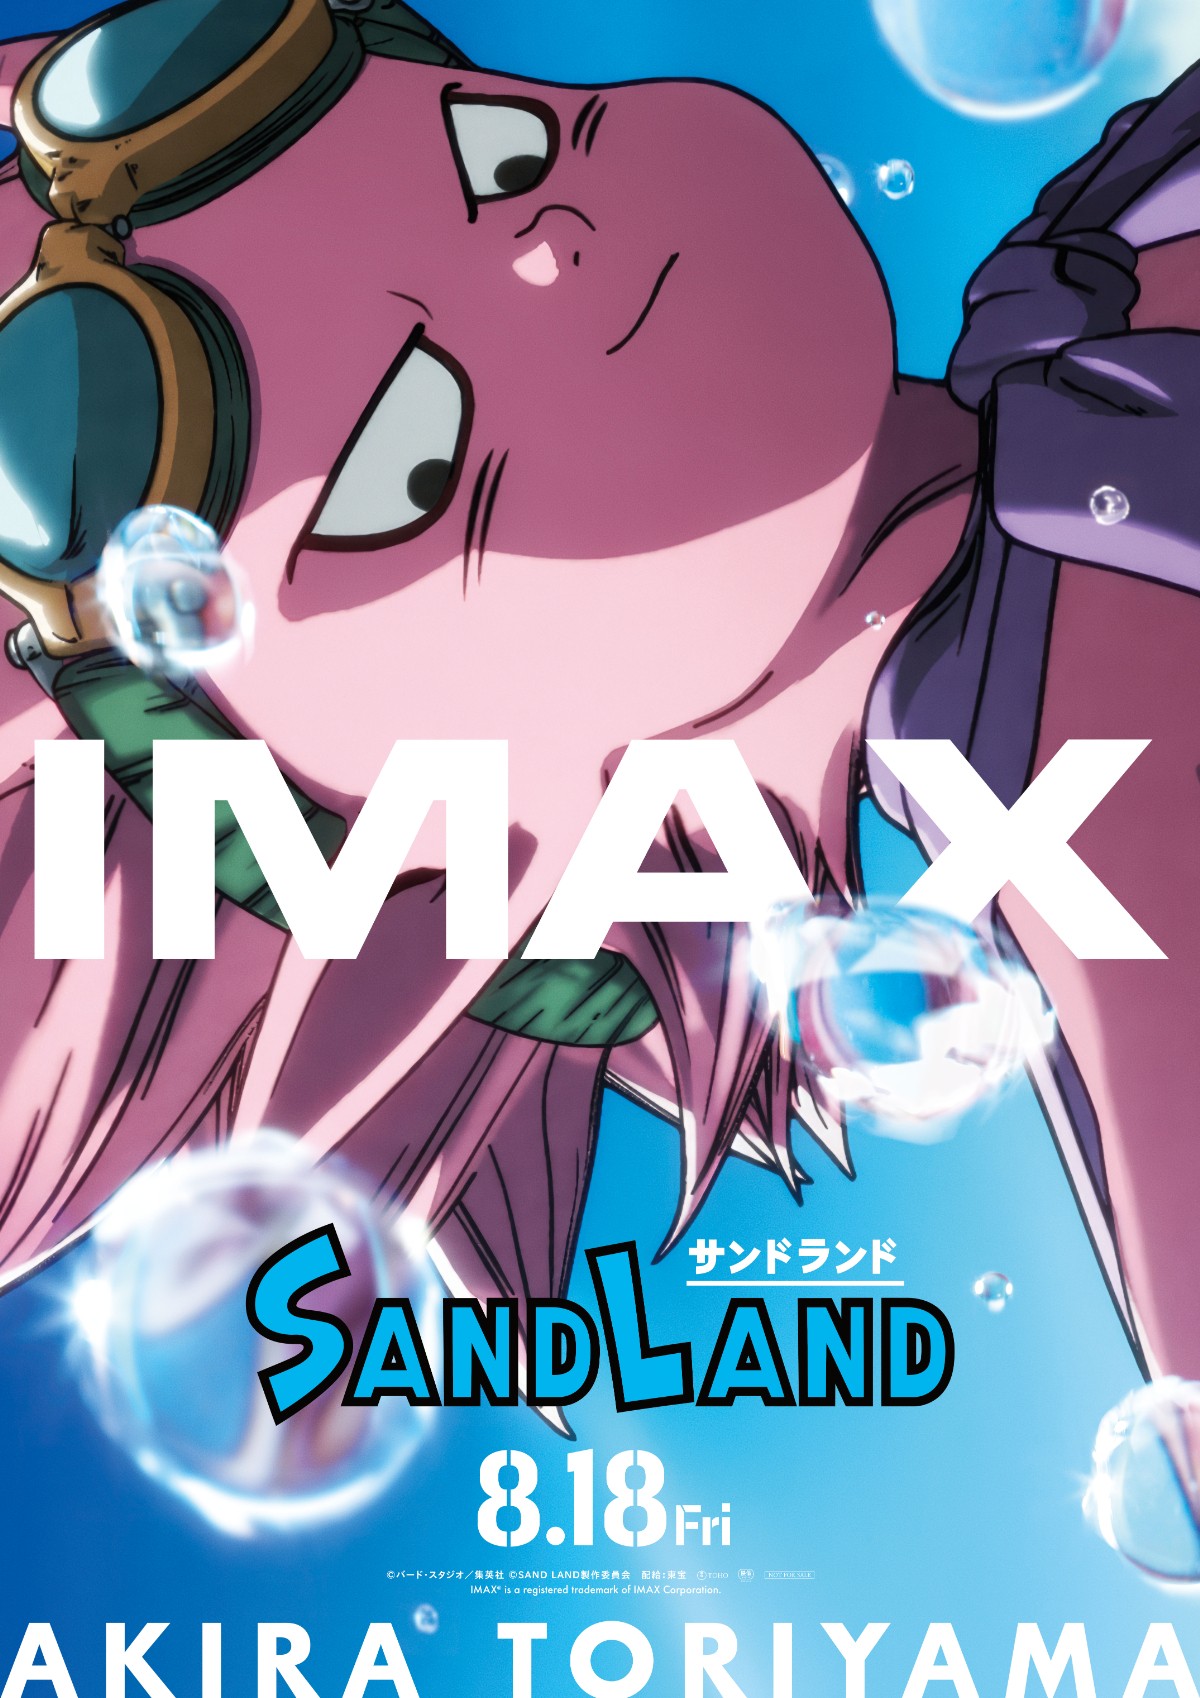 鳥山明原作のアニメ映画『SAND LAND』ラージフォーマット上映決定 公開 